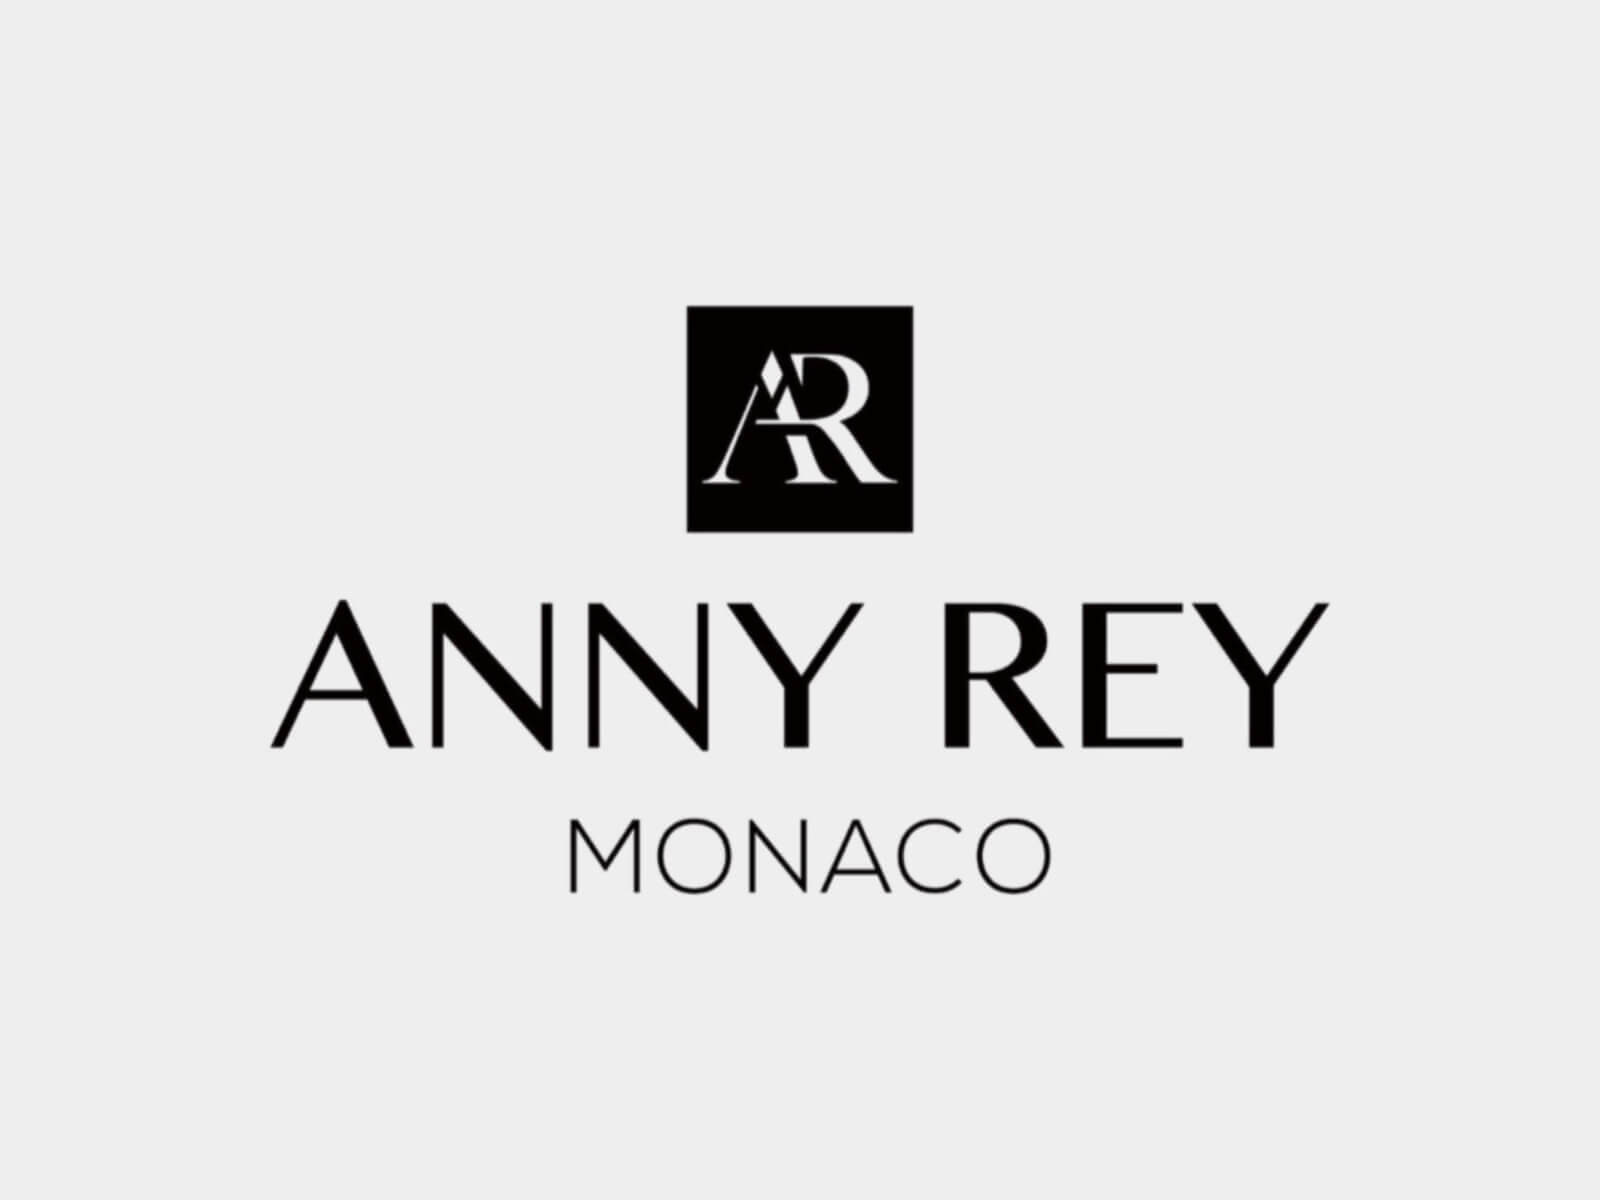 Крем anny rey. Французская косметика Greenway Anny Rey. Anna Rey Monaco косметика. Anny Rey французская премиум-косметика Гринвей. Ани Рей Гринвей.